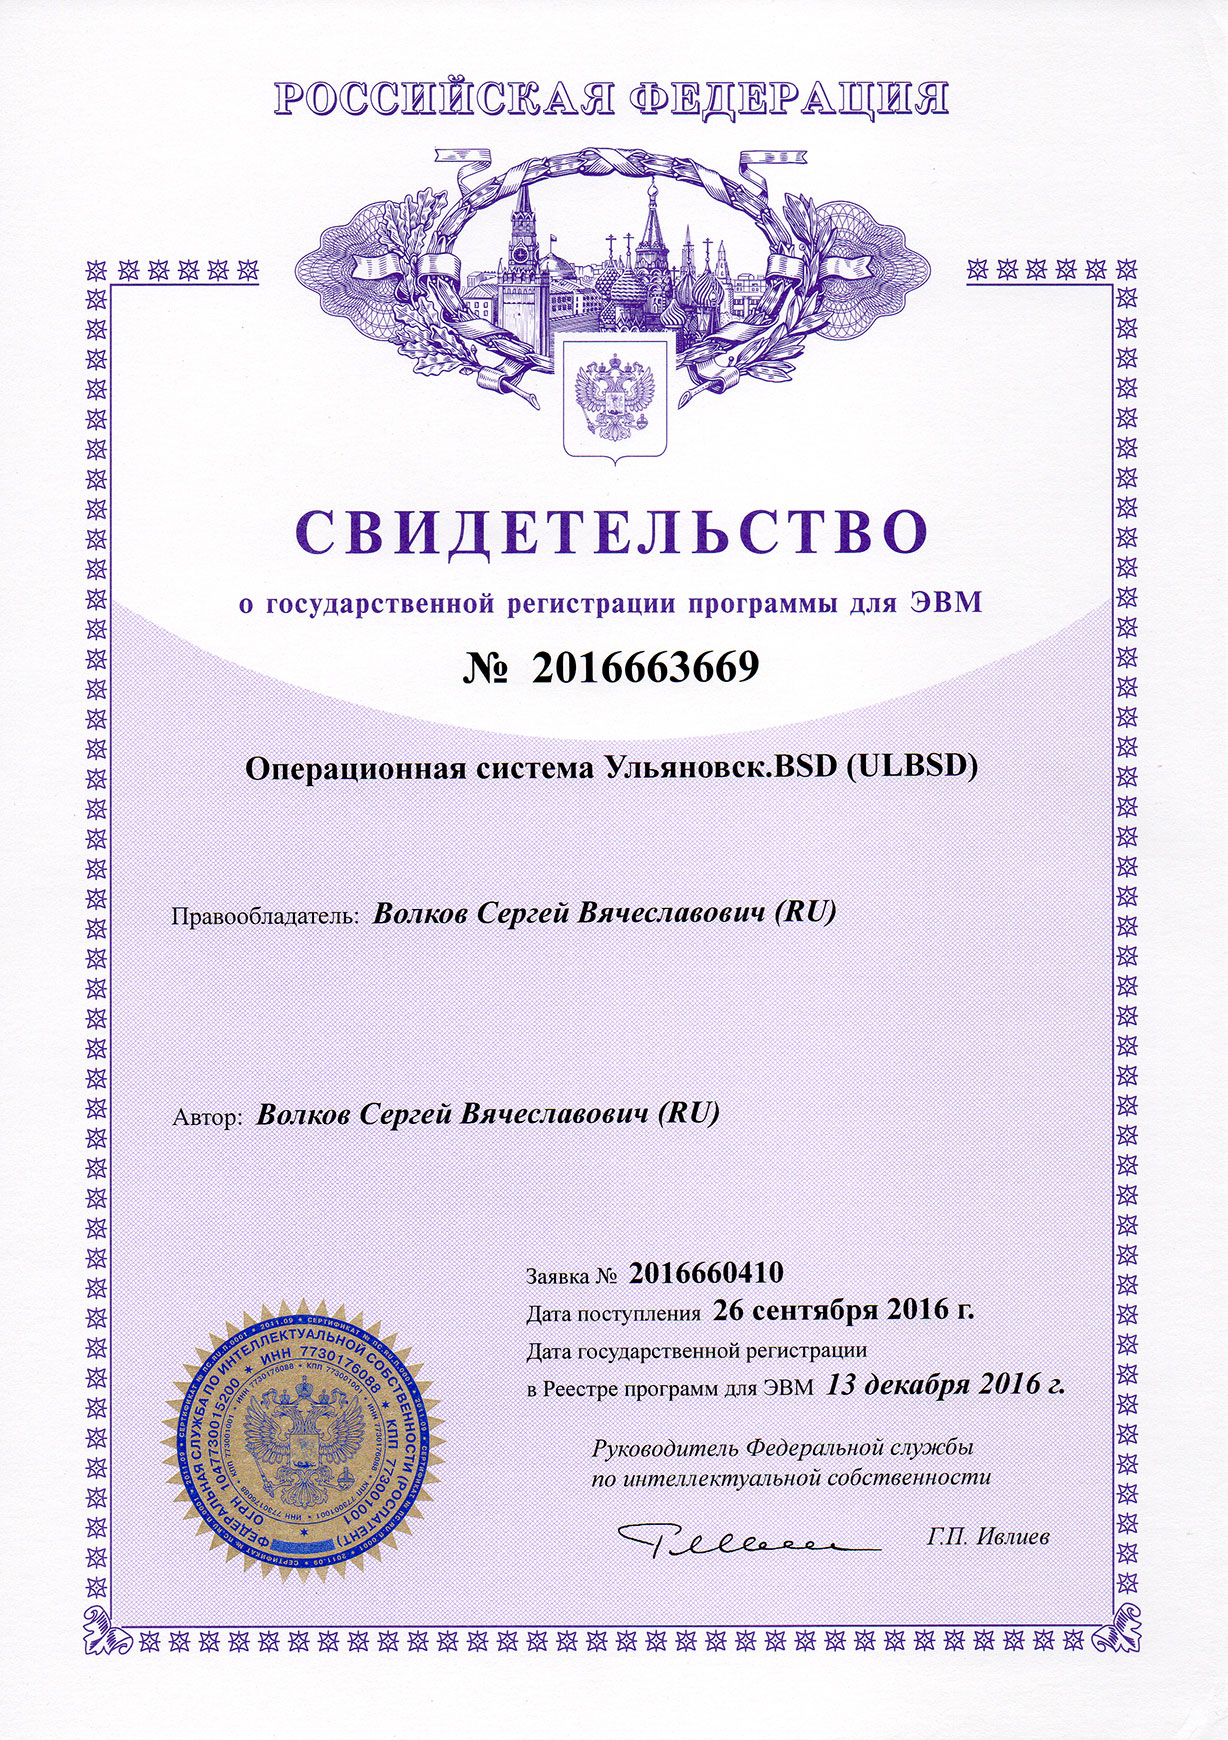 Свидетельство о государственной регистрации программы для ЭВМ: Операционная система Ульяновск.BSD (ULBSD)